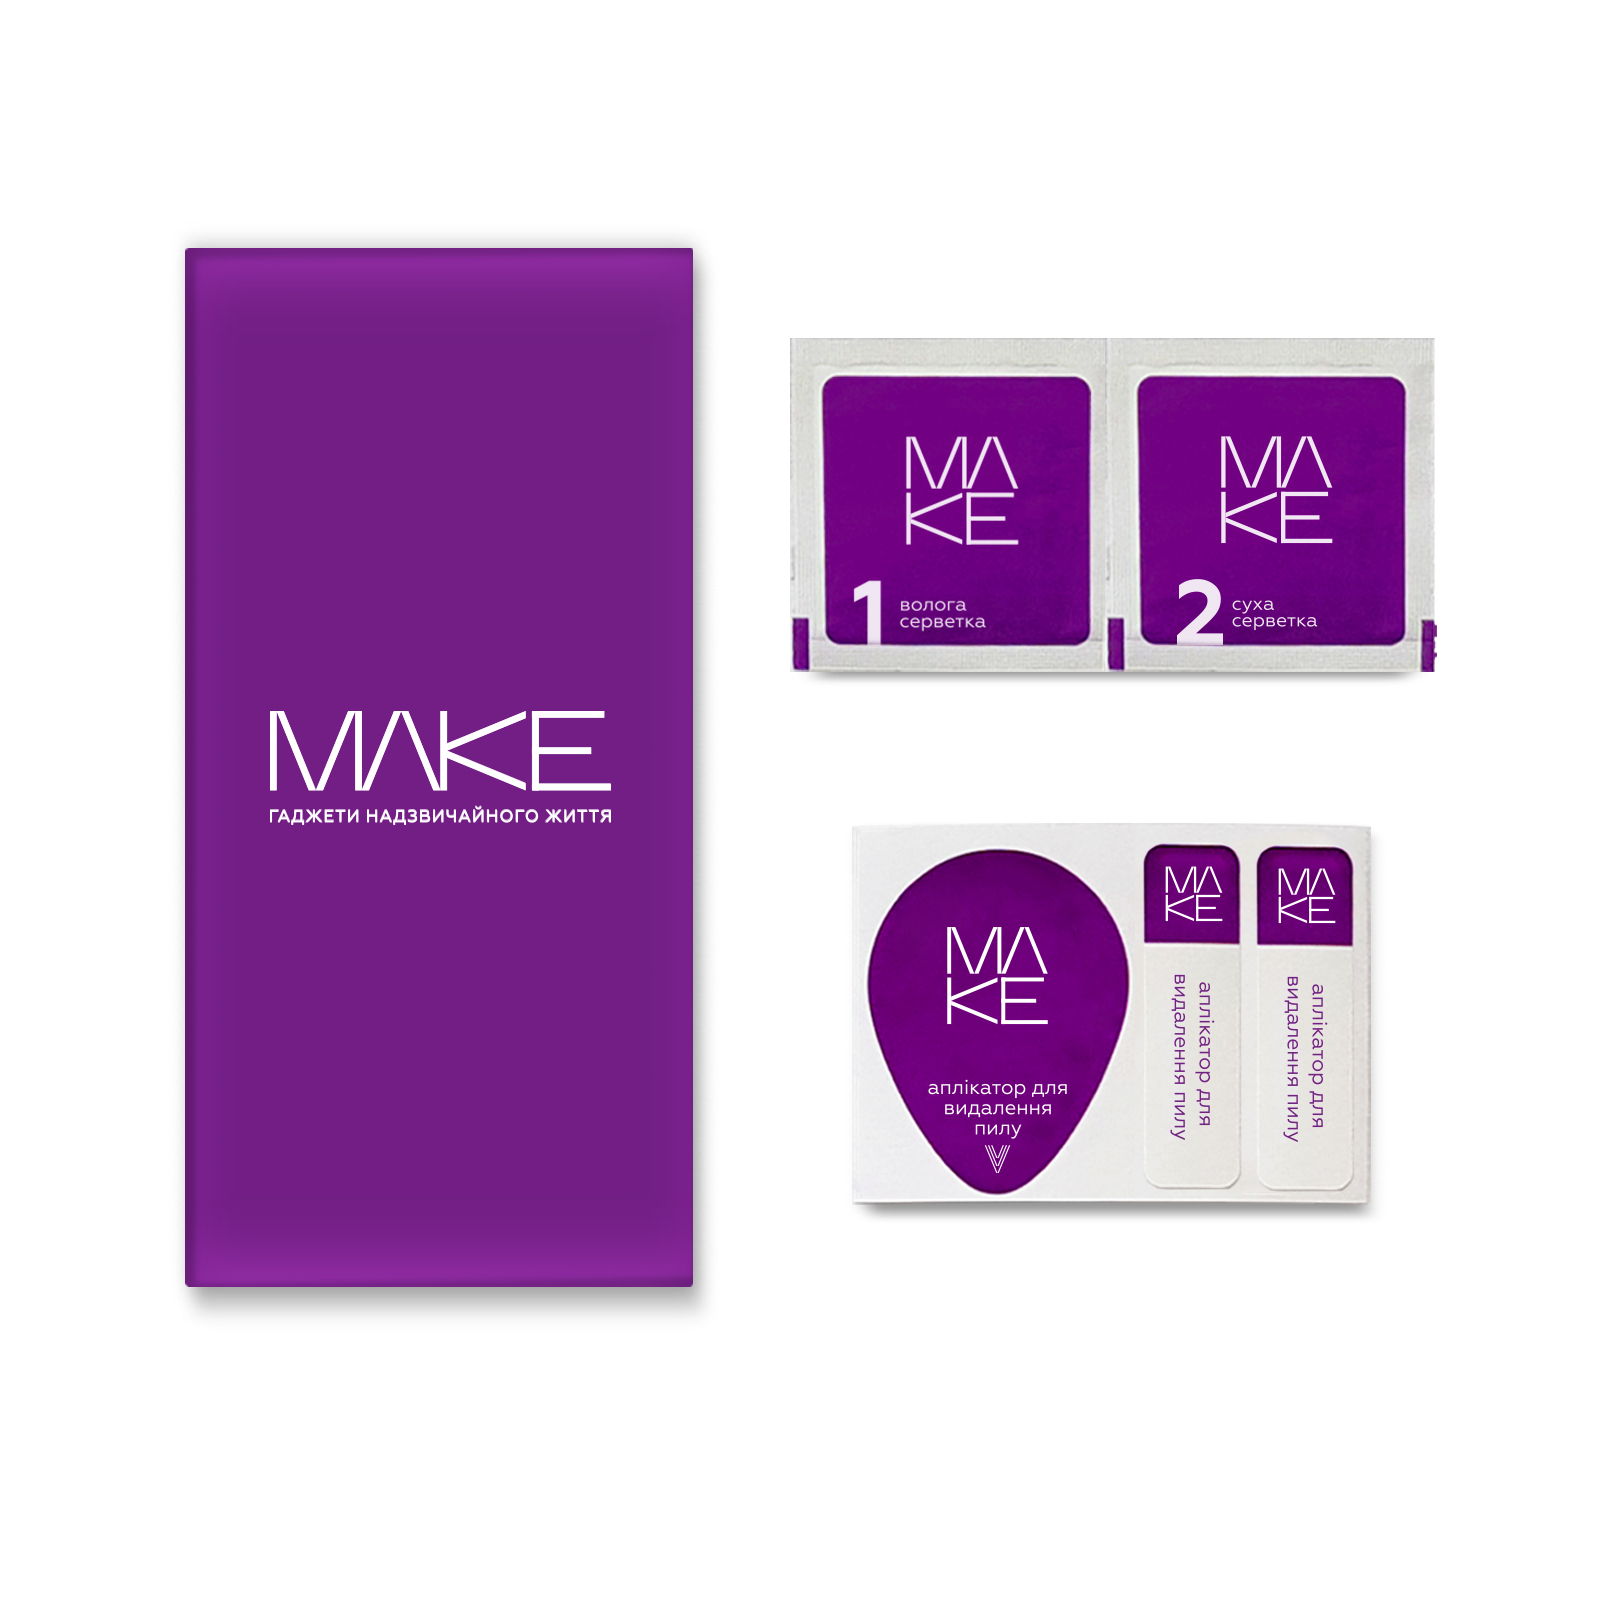 Стекло защитное MAKE Samsung M14 (MGF-SM14) изображение 2